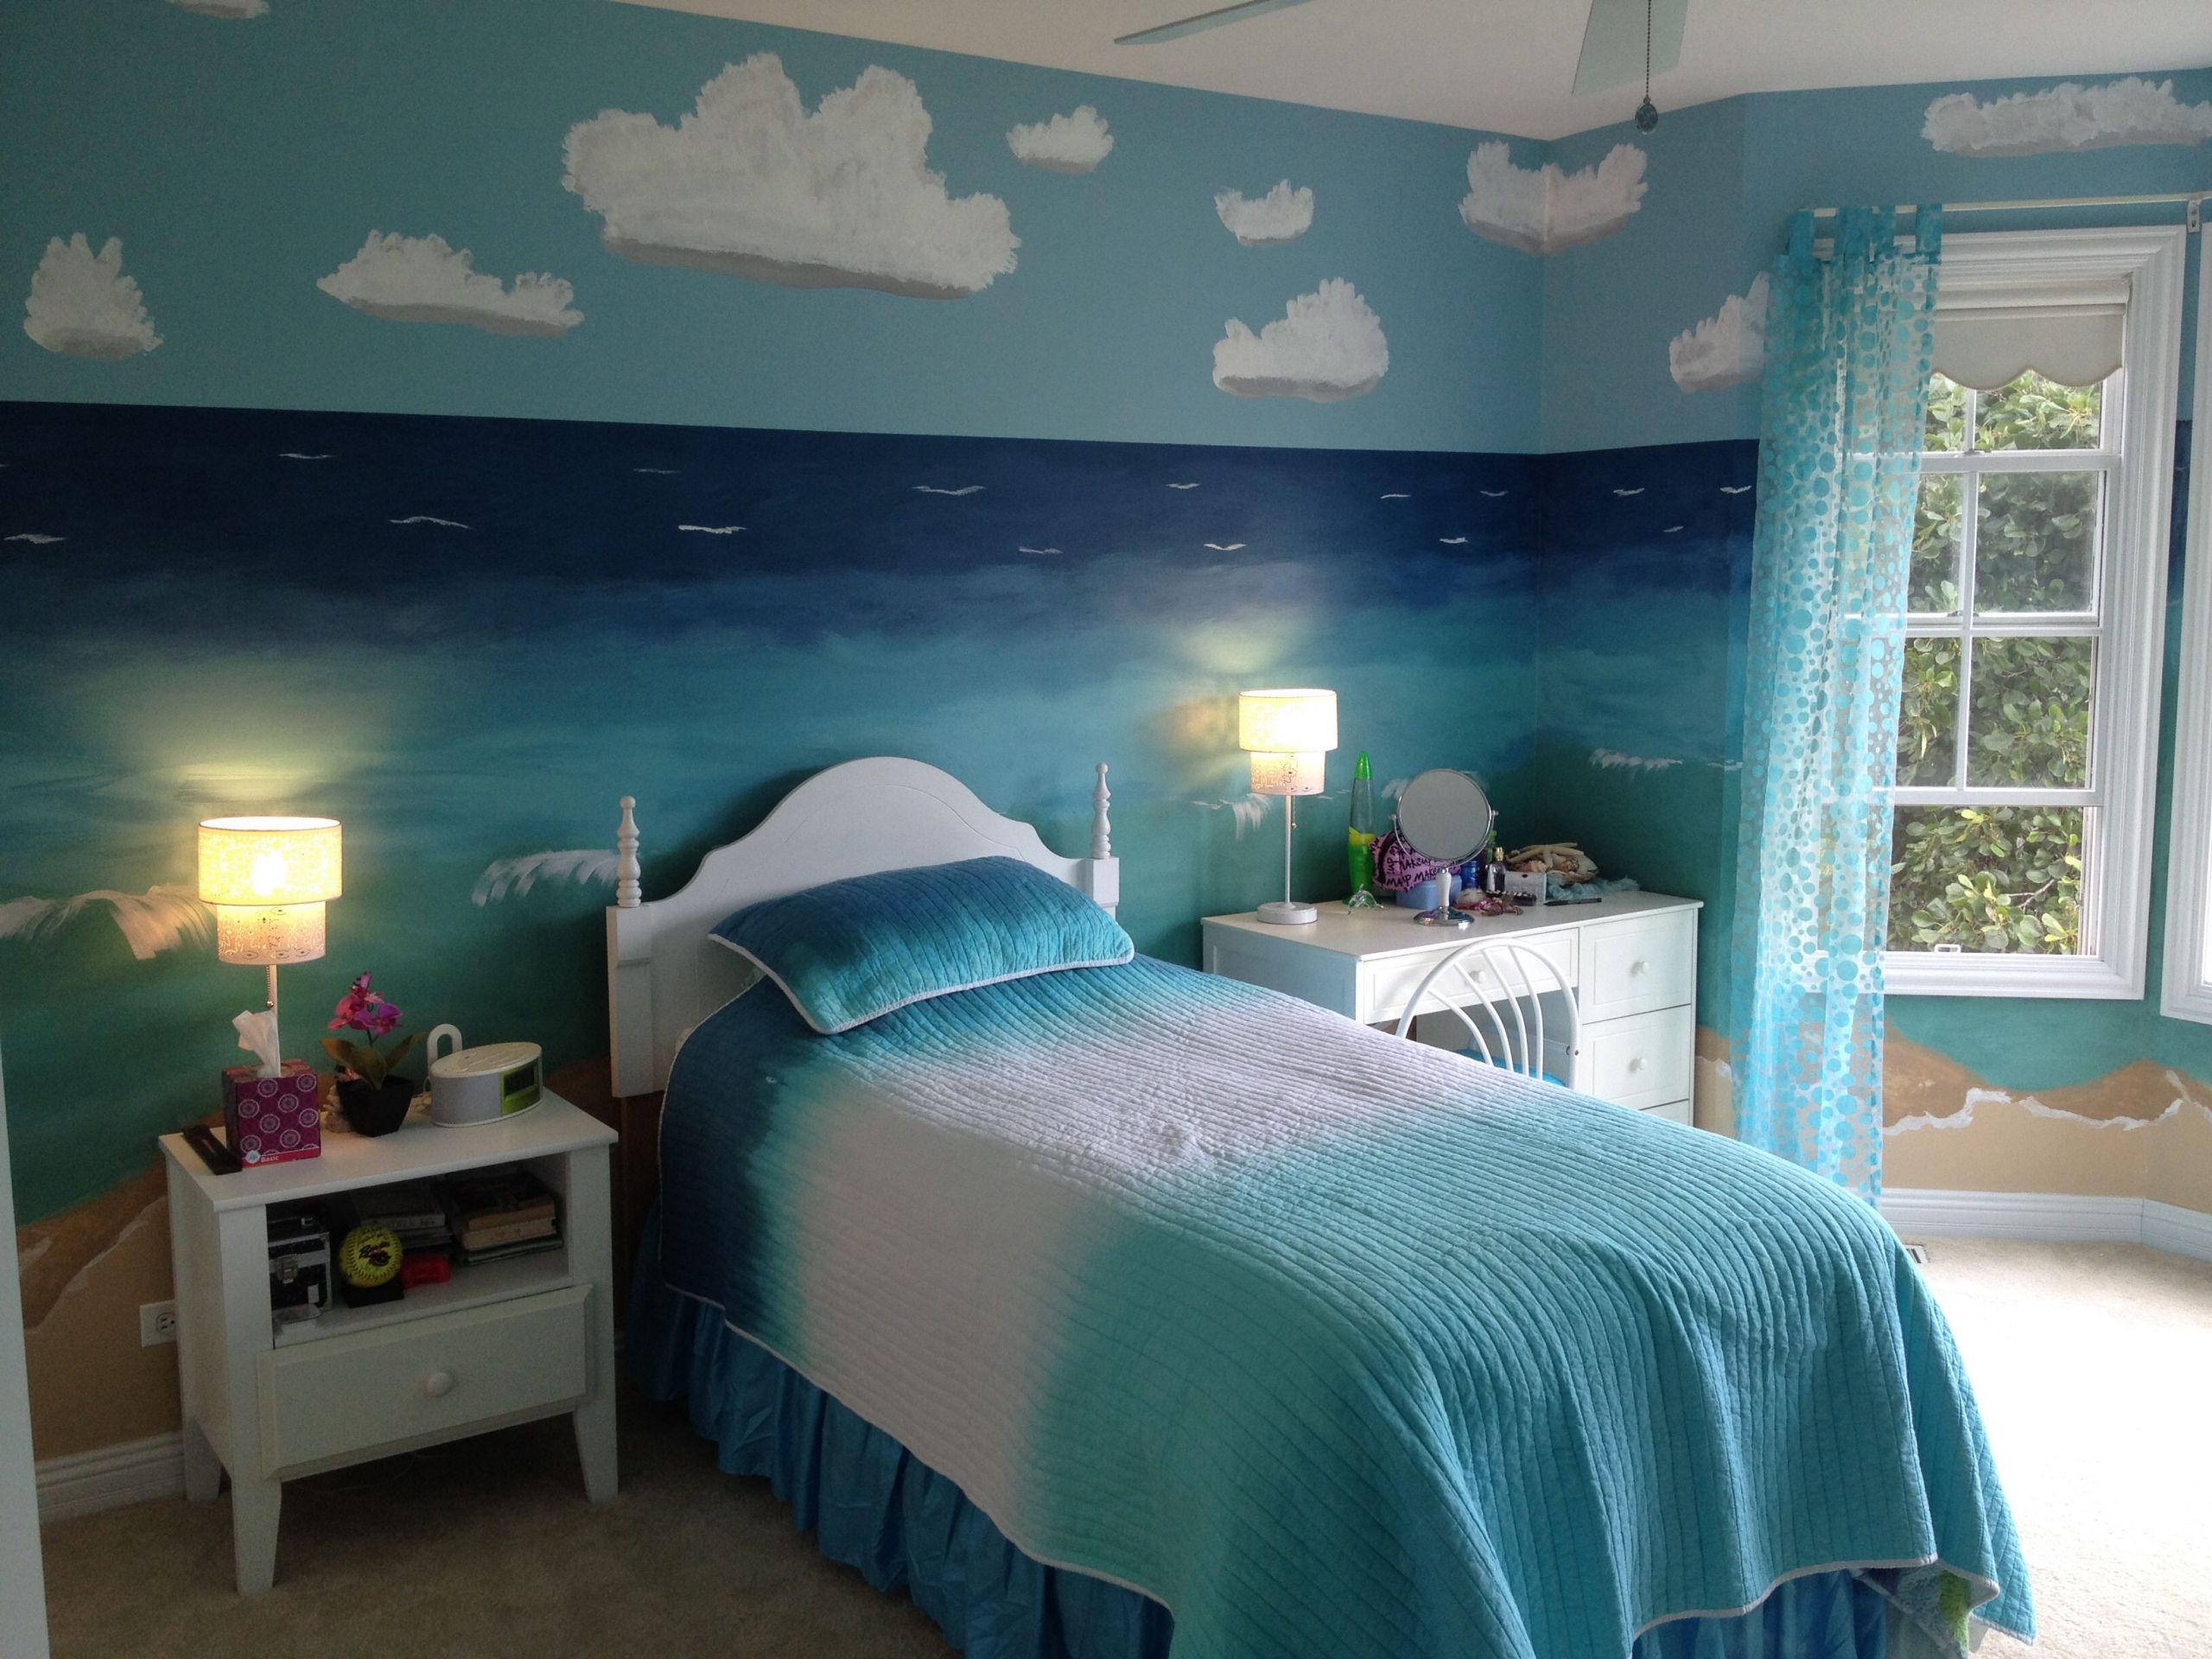 Ocean Bedroom Decorations
 Beach Theme Bedroom